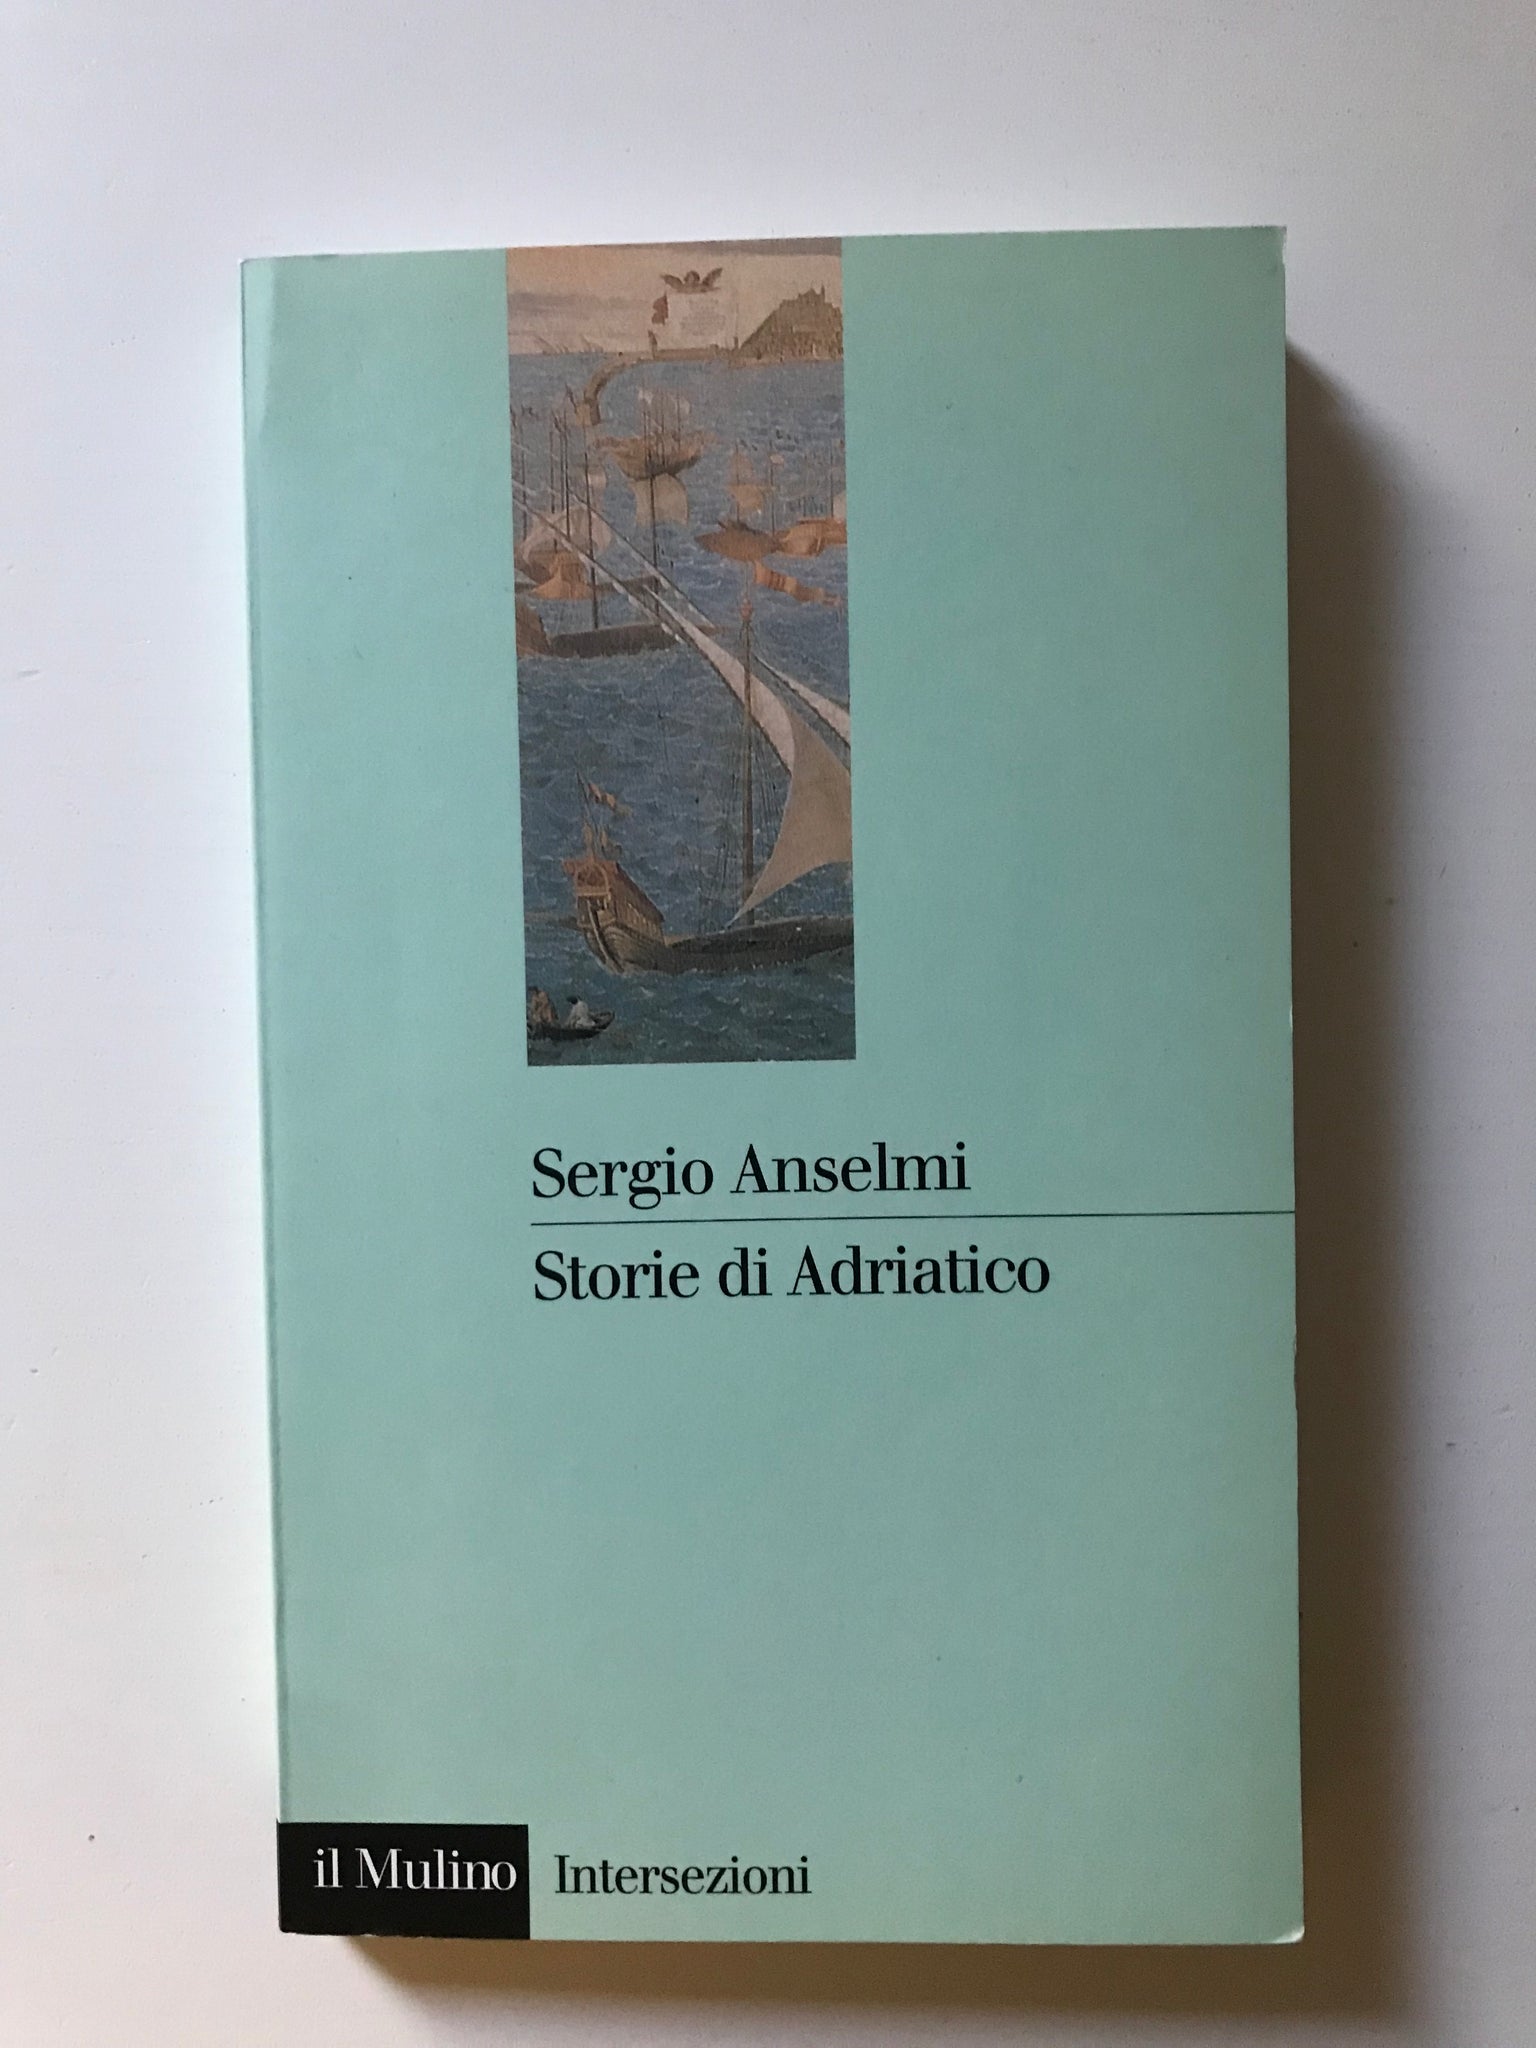 Sergio Anselmi - Storie di Adriatico